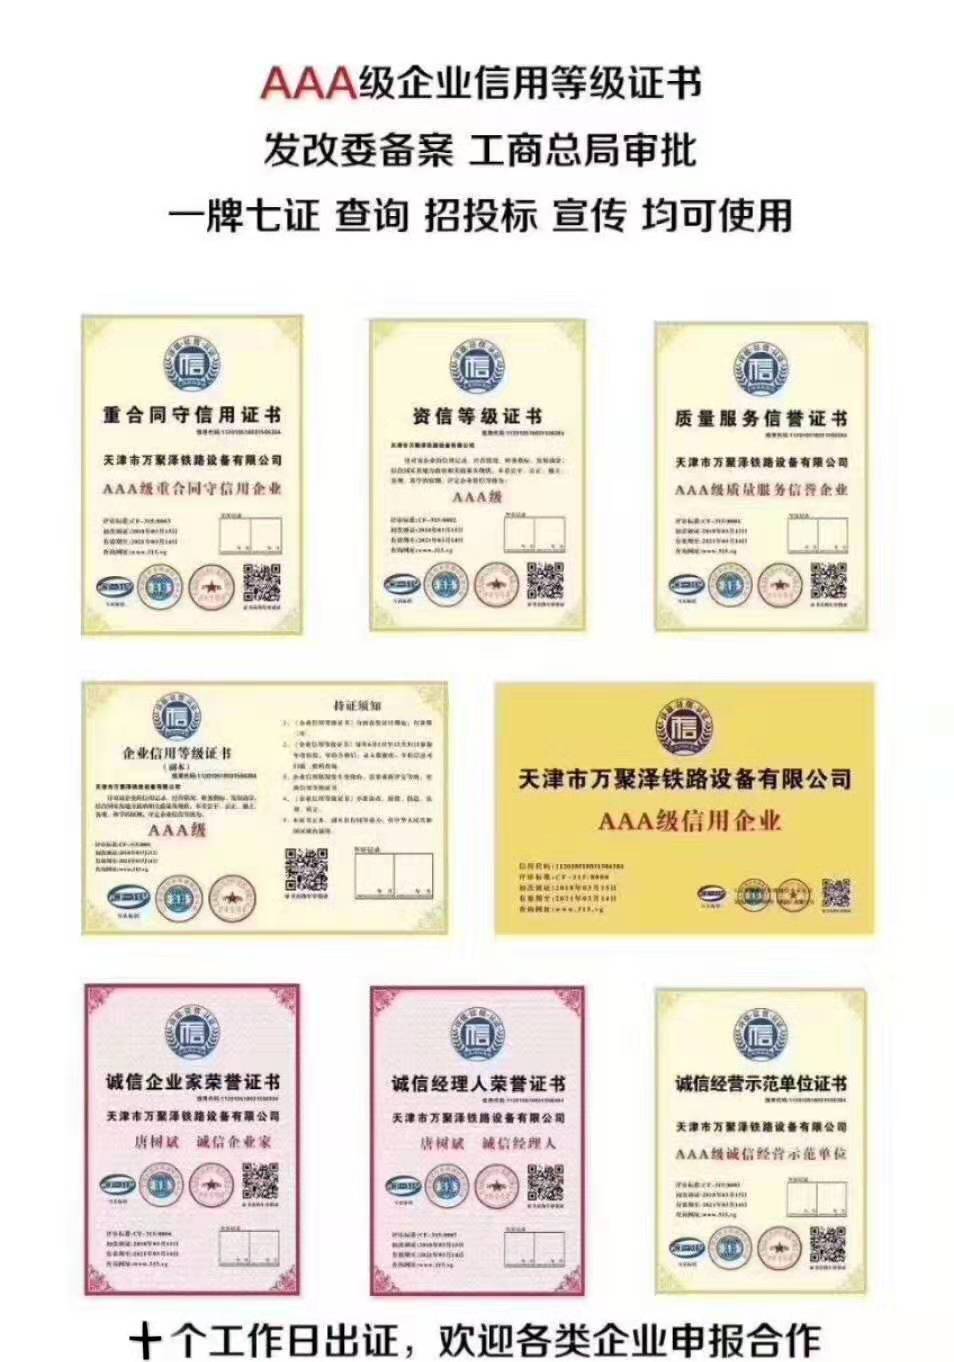 邯郸市陶瓷企业荣誉证书制作